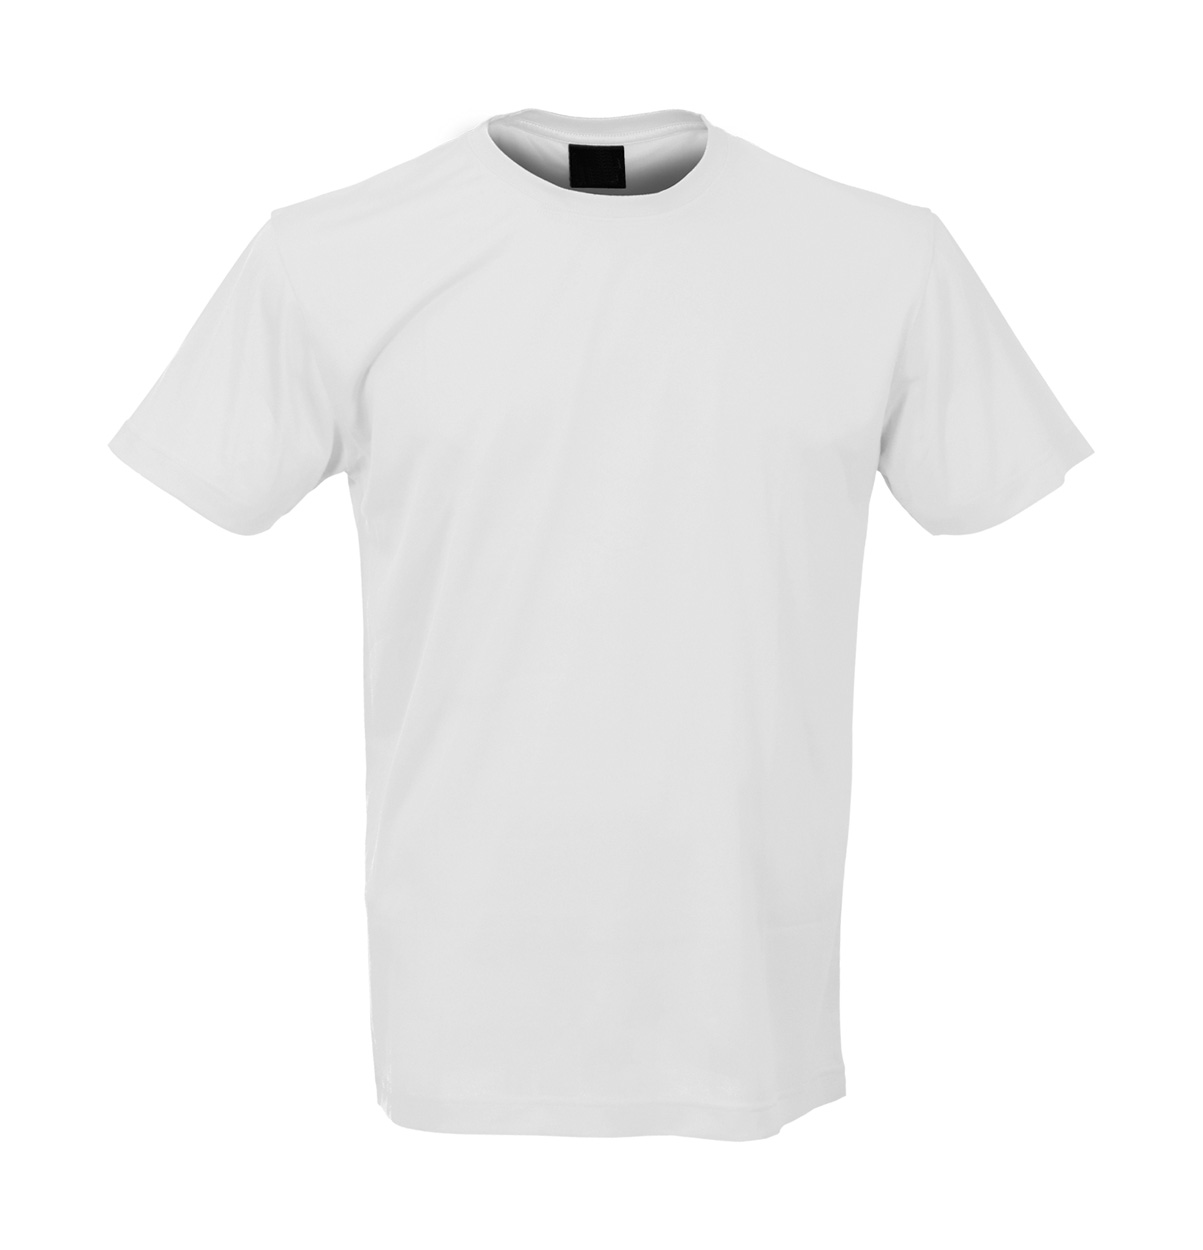 Tecnic majica kratkih rukava, bijele boje s tiskom (opcija) 